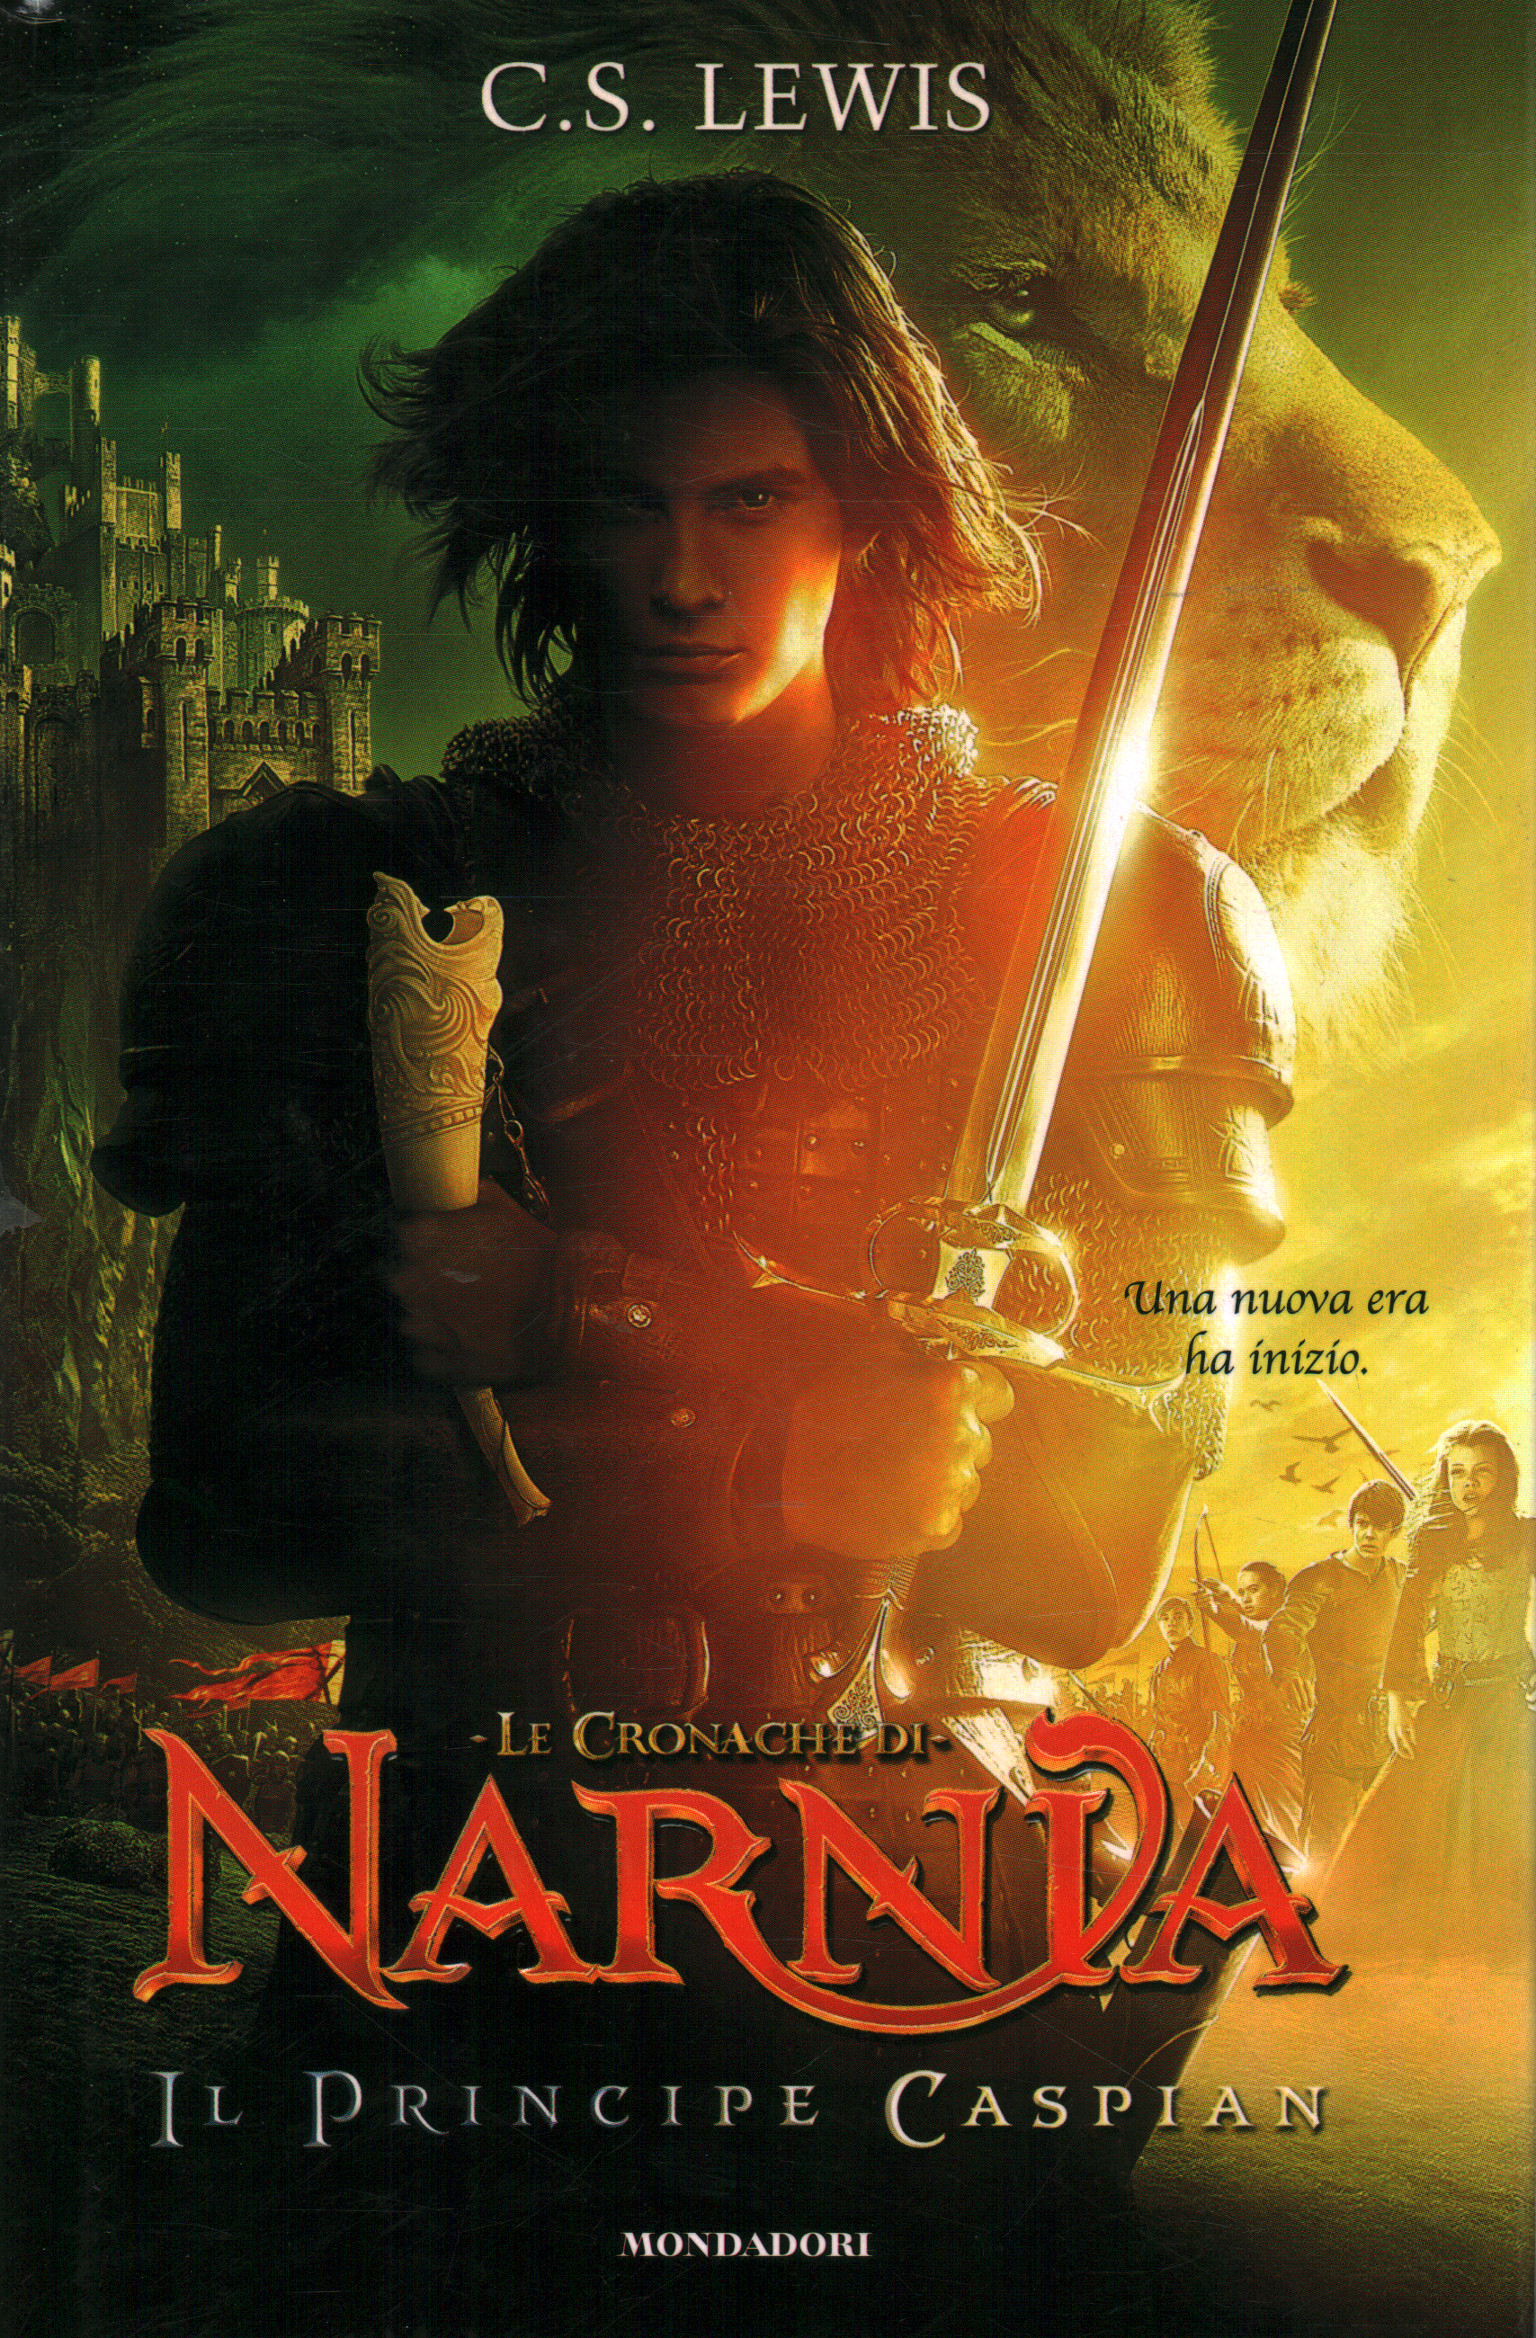 Die Chroniken von Narnia – Prinz Kaspian, C.S. Lewis